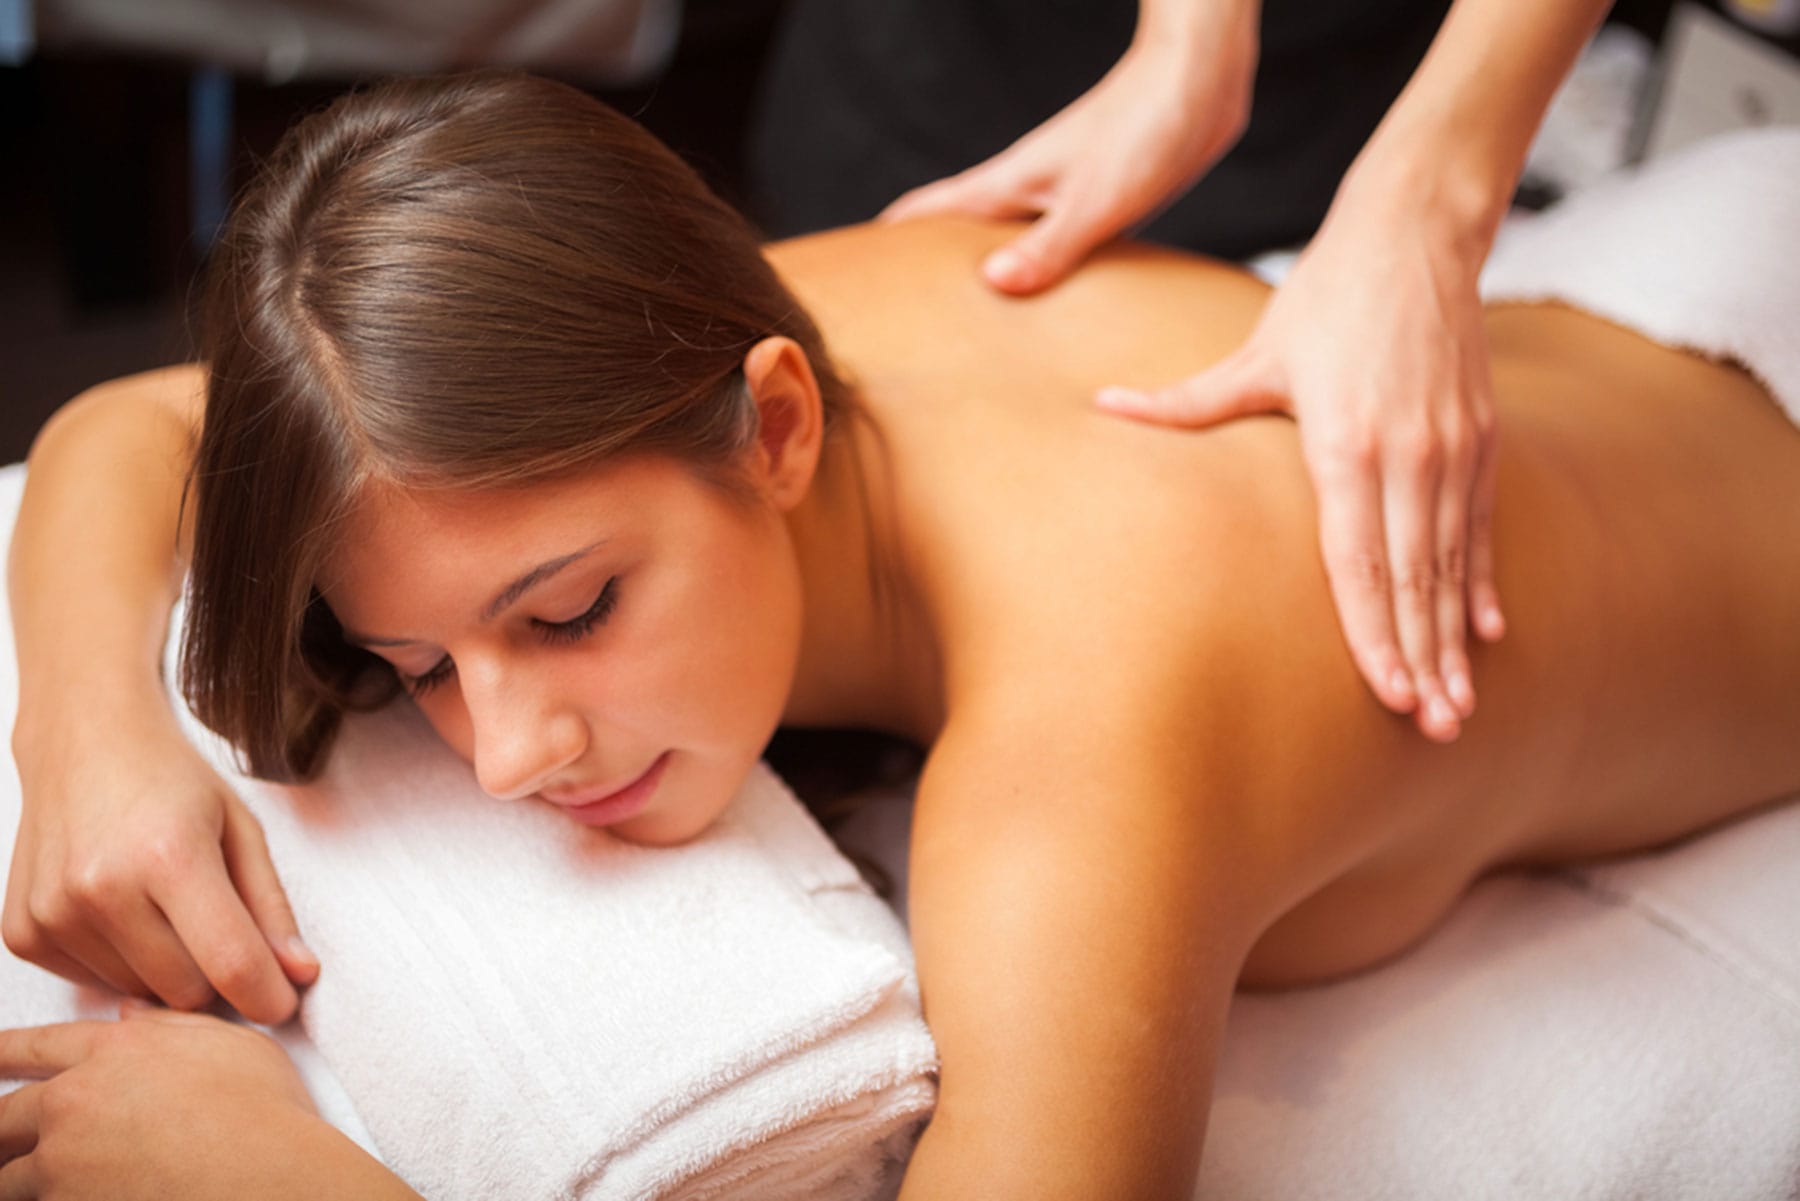 Swedish Massage in Miami Beach provides LMT at the massage studio or mobile...